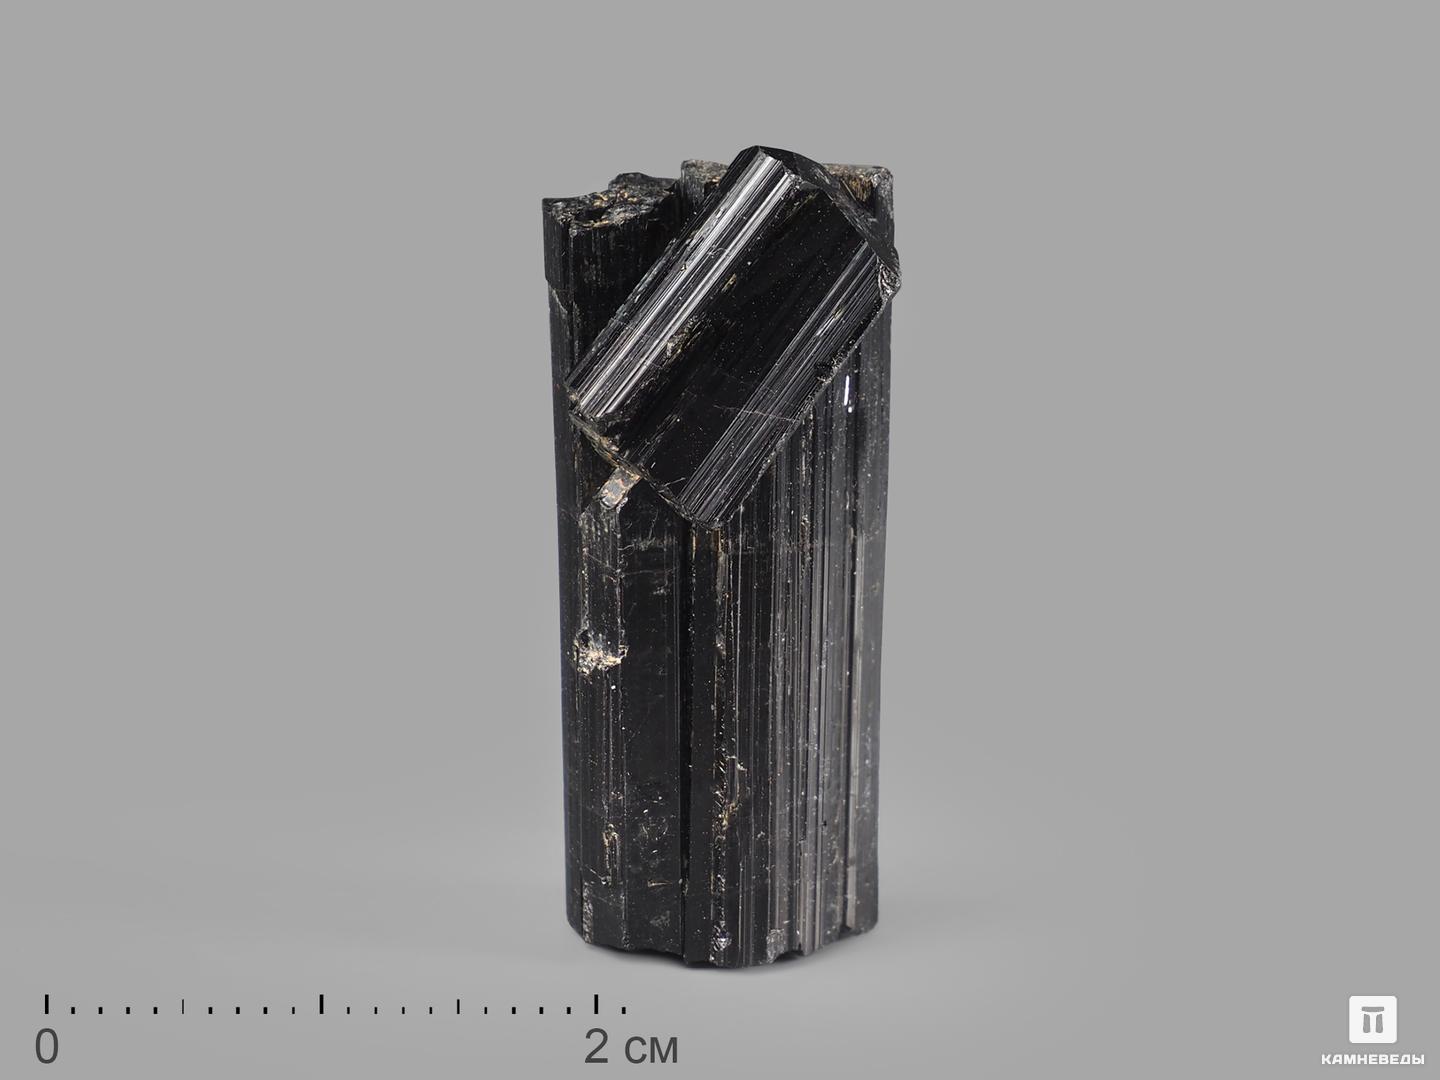 Шерл (чёрный турмалин), кристалл 3,5х1,5х1,2 см, 21641, фото 1